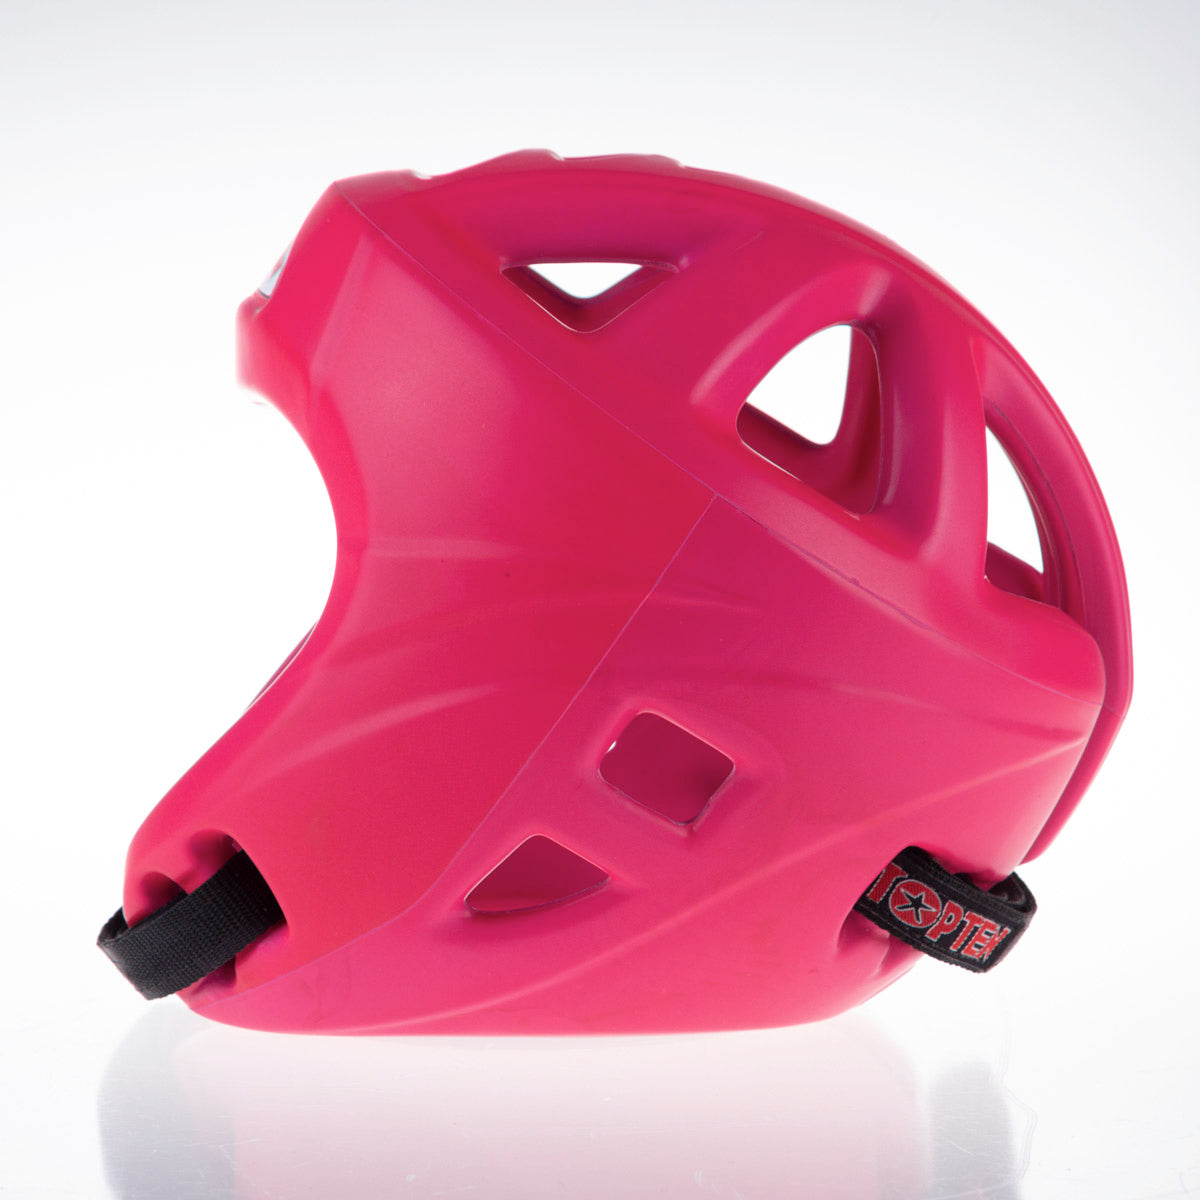 Kopfschutz Top Ten Avantgarde - pink, 4066-7